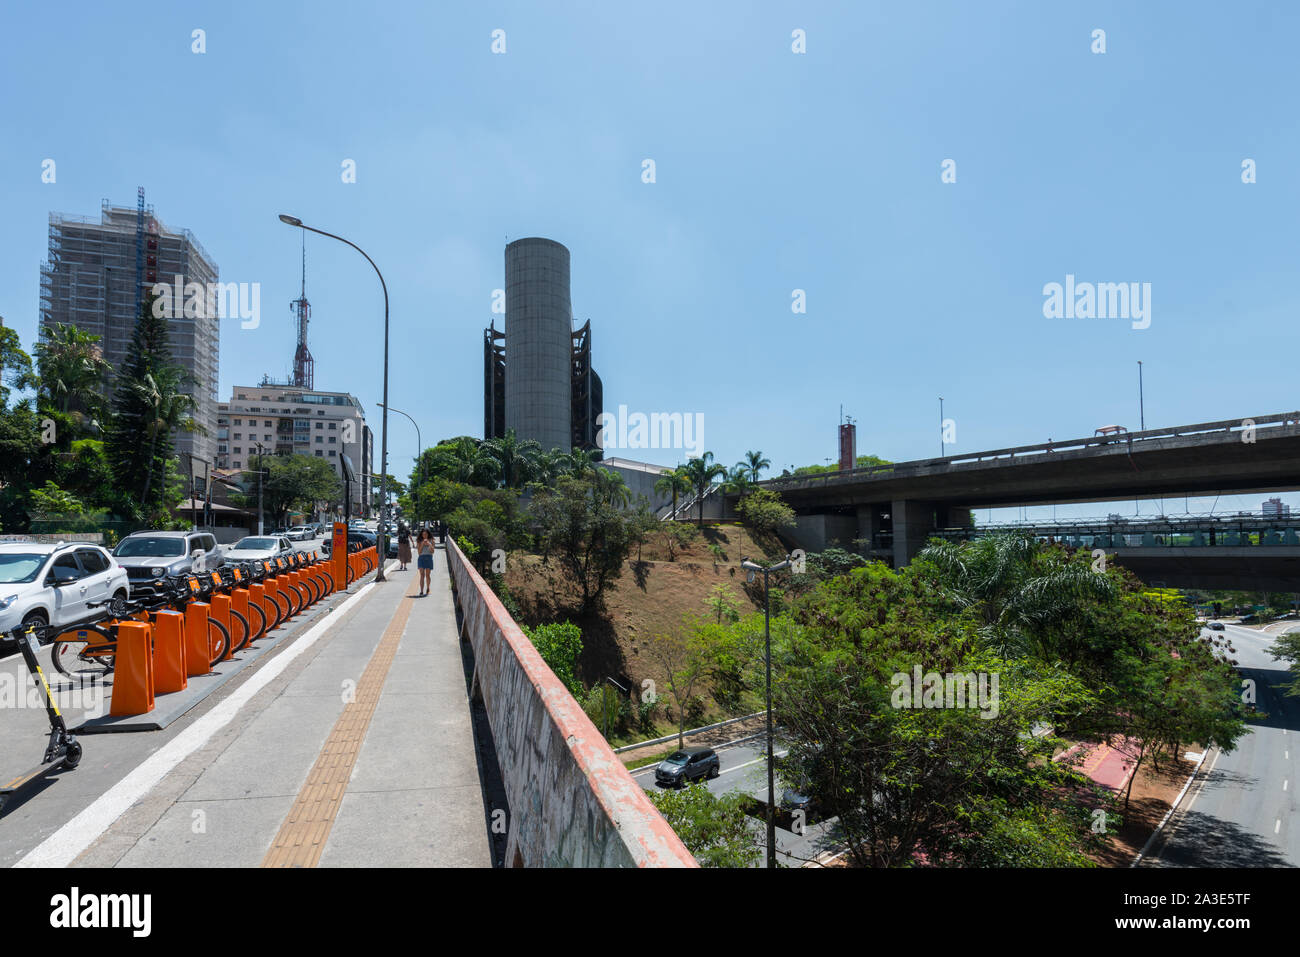 SAO PAULO, BRÉSIL - 05 octobre, 2019, grand angle : photo d'une rue publique à proximité de la station de métro Sumaré pendant journée ensoleillée à Sao Paulo, Brésil Banque D'Images